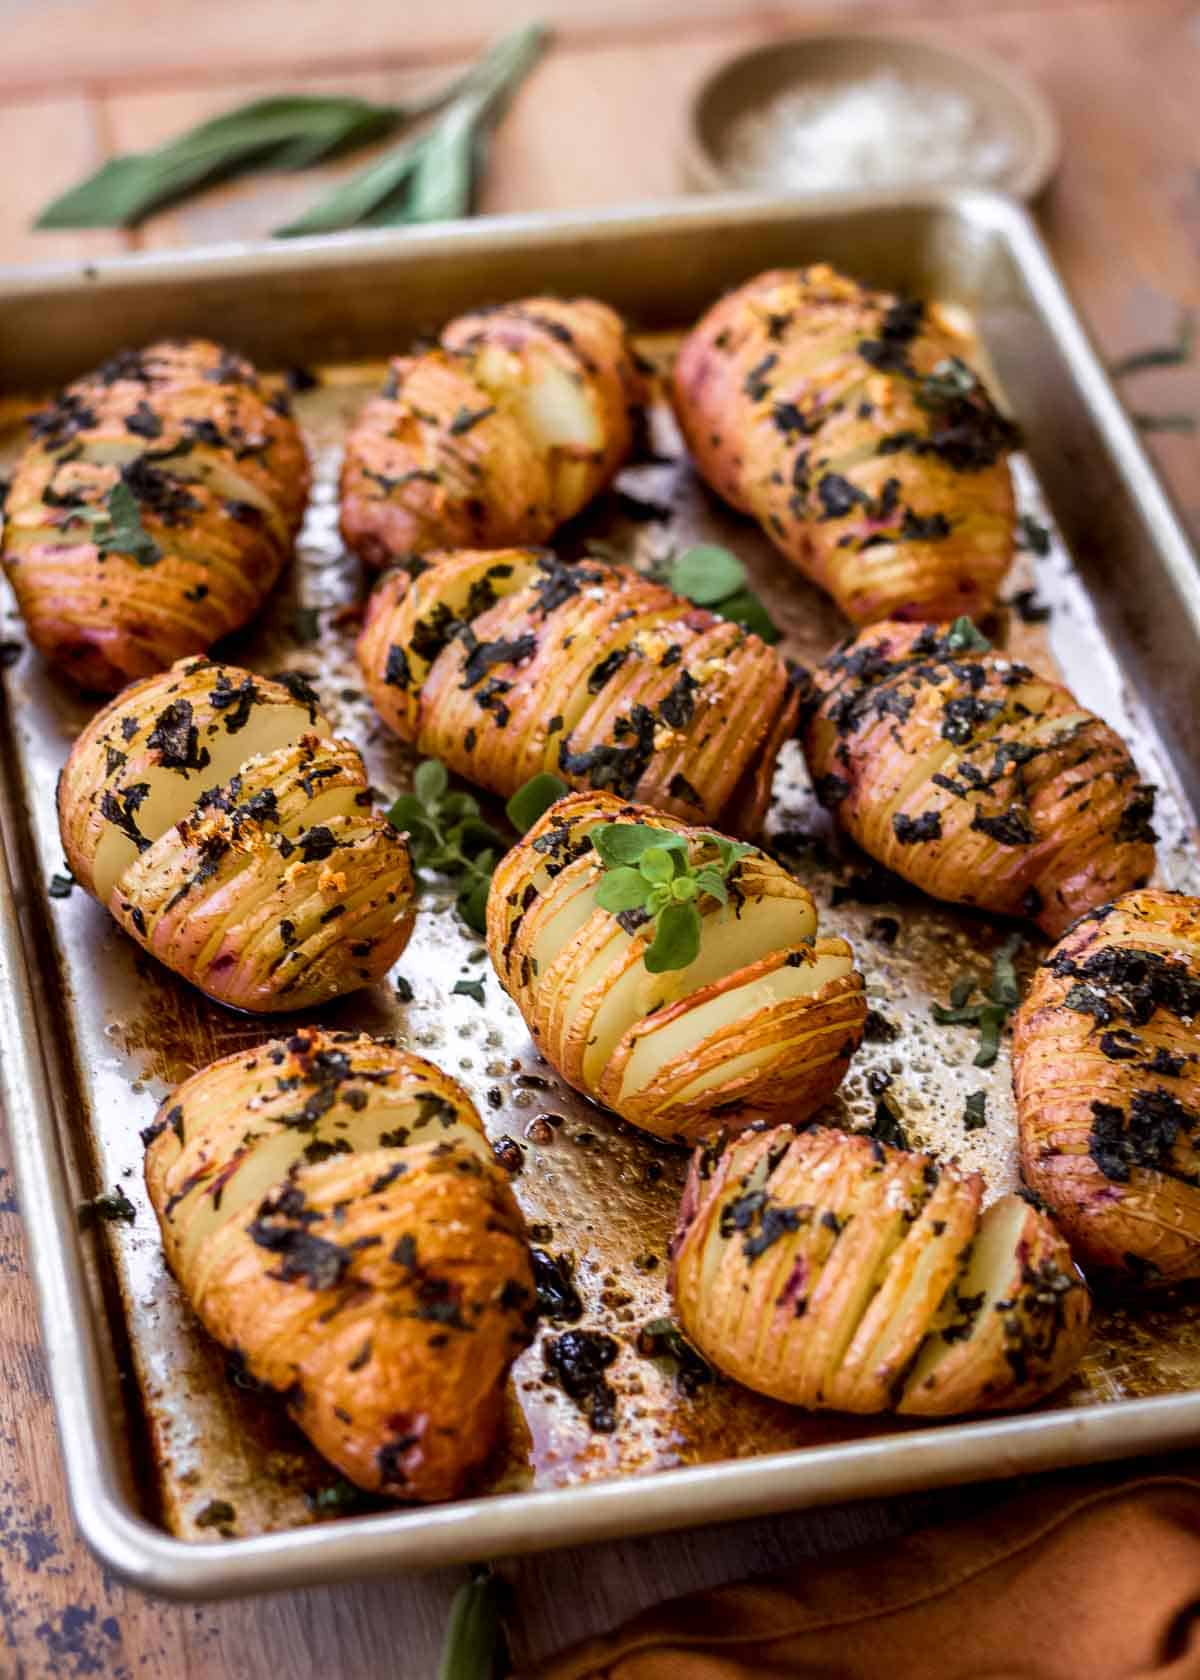 Σκόρδο πατάτες σε ασημένιο ταψί, διακοσμημένο με φρέσκα μυρωδικά και βότανα στο βάθος.